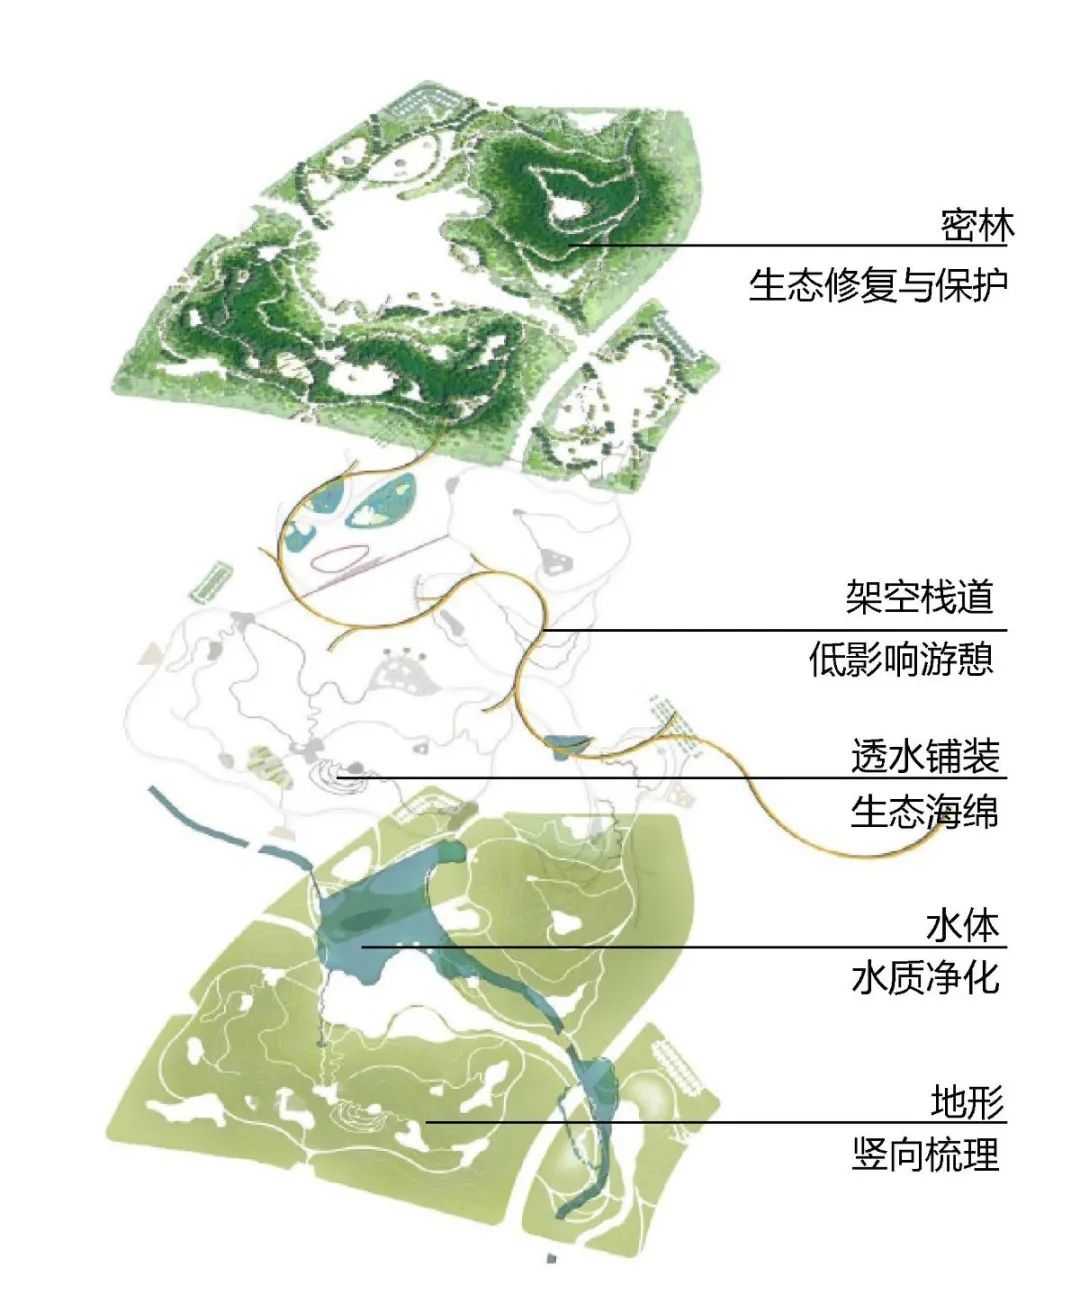 感自然之脉搏 享绿色之趣行 | 溧水金龙山绿廊景观规划设计(图5)